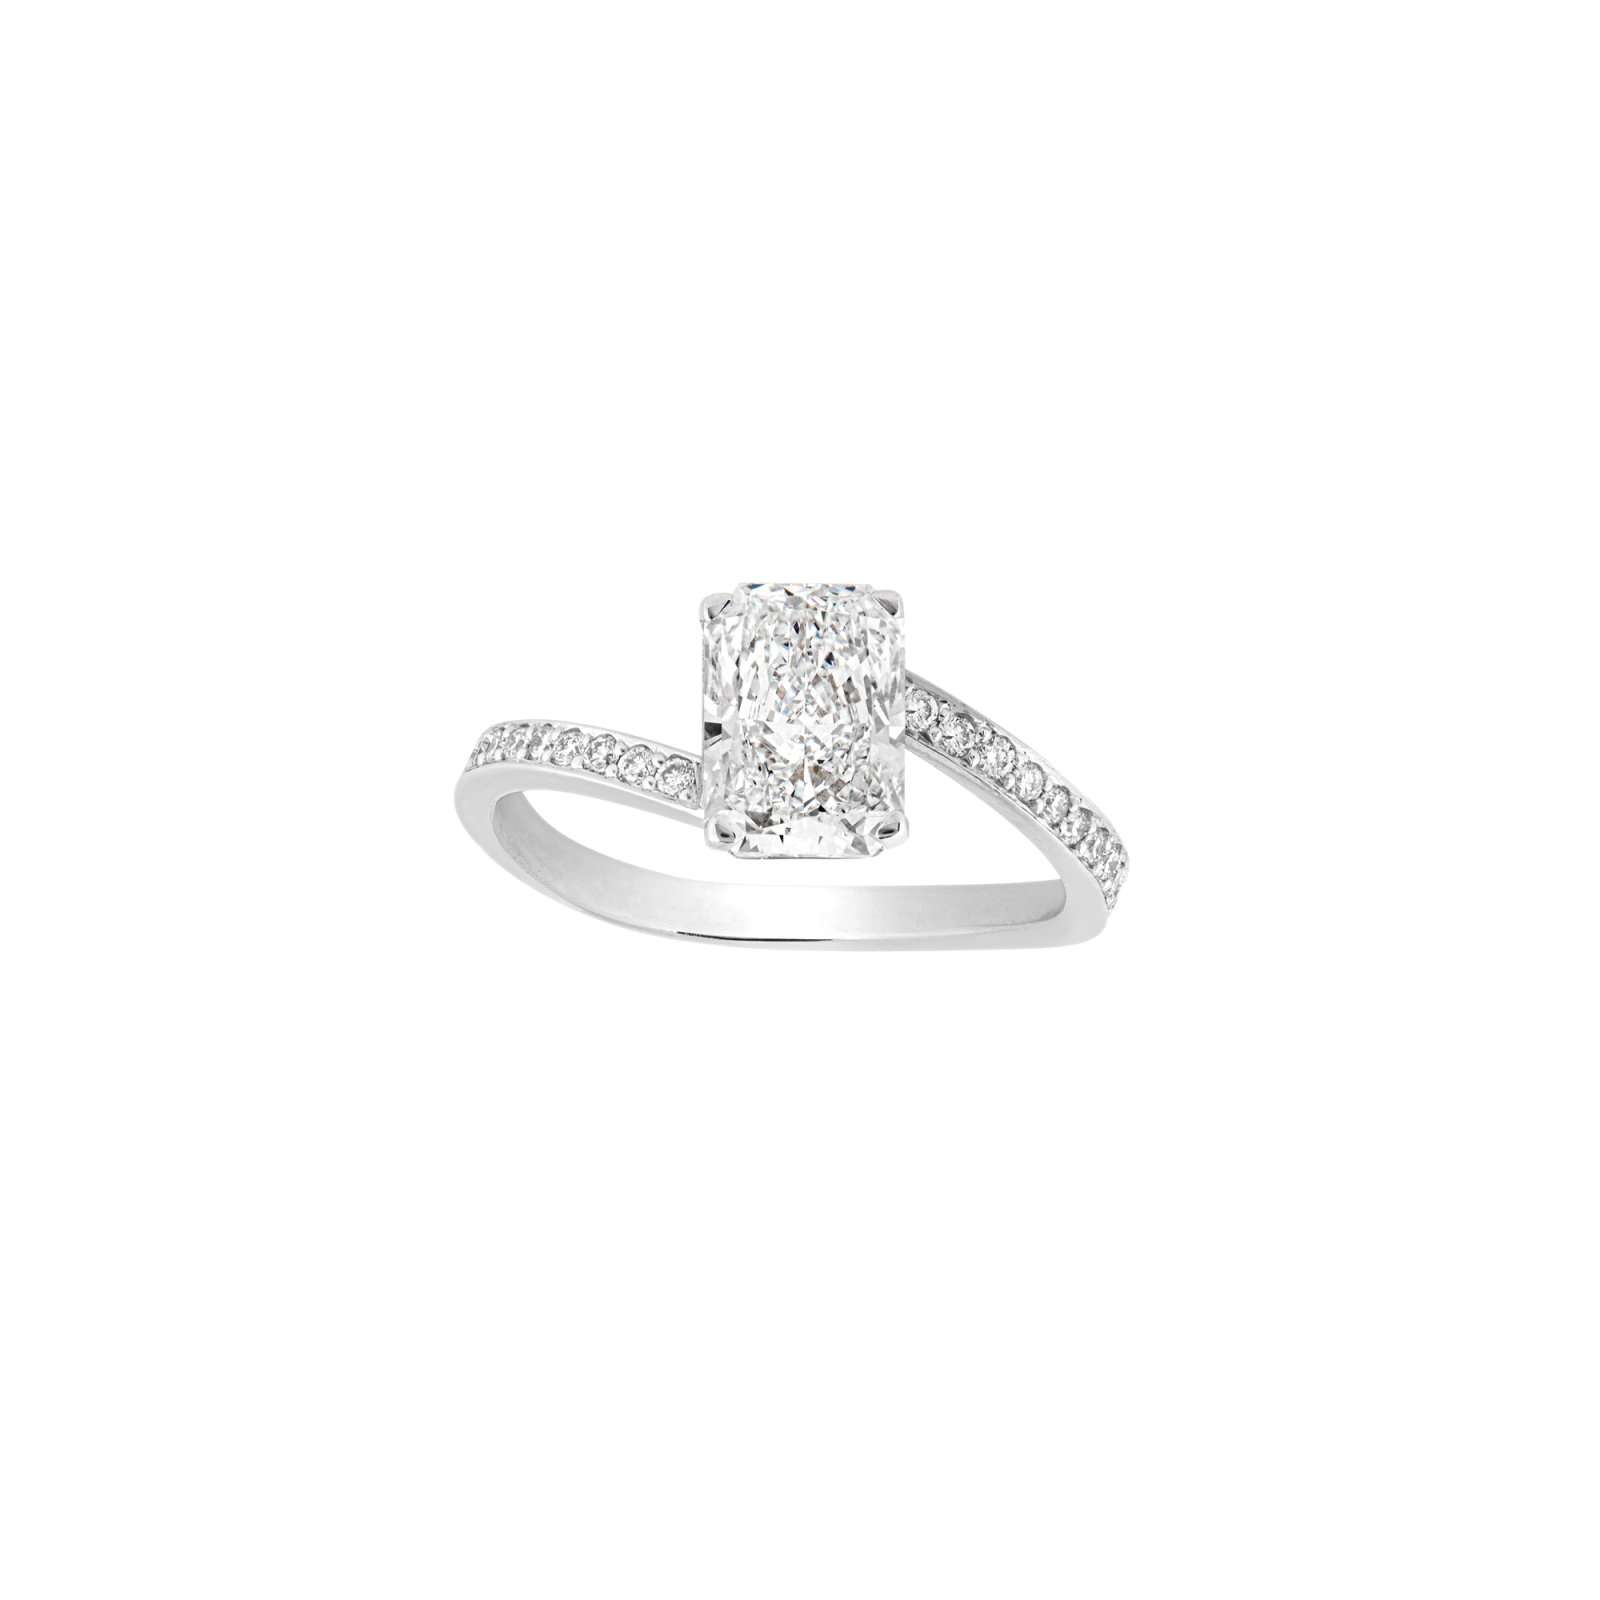 Michelle Engagement ring packshot - white gold